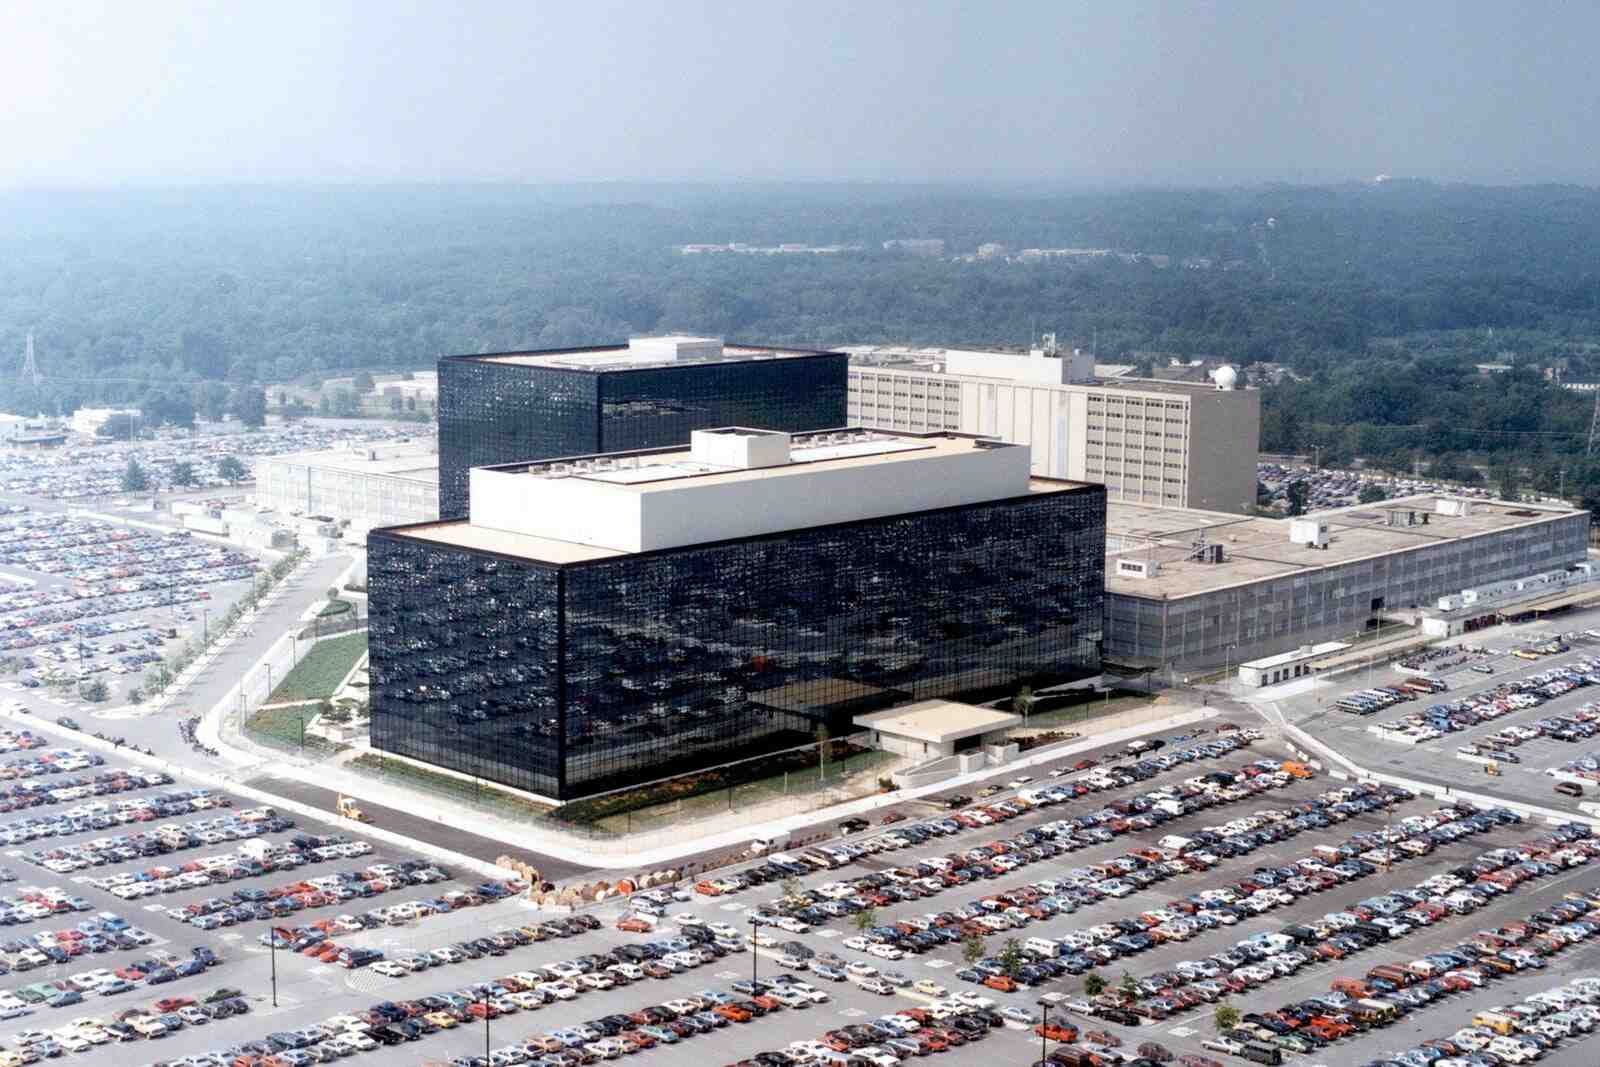 Does NSA run Tor?